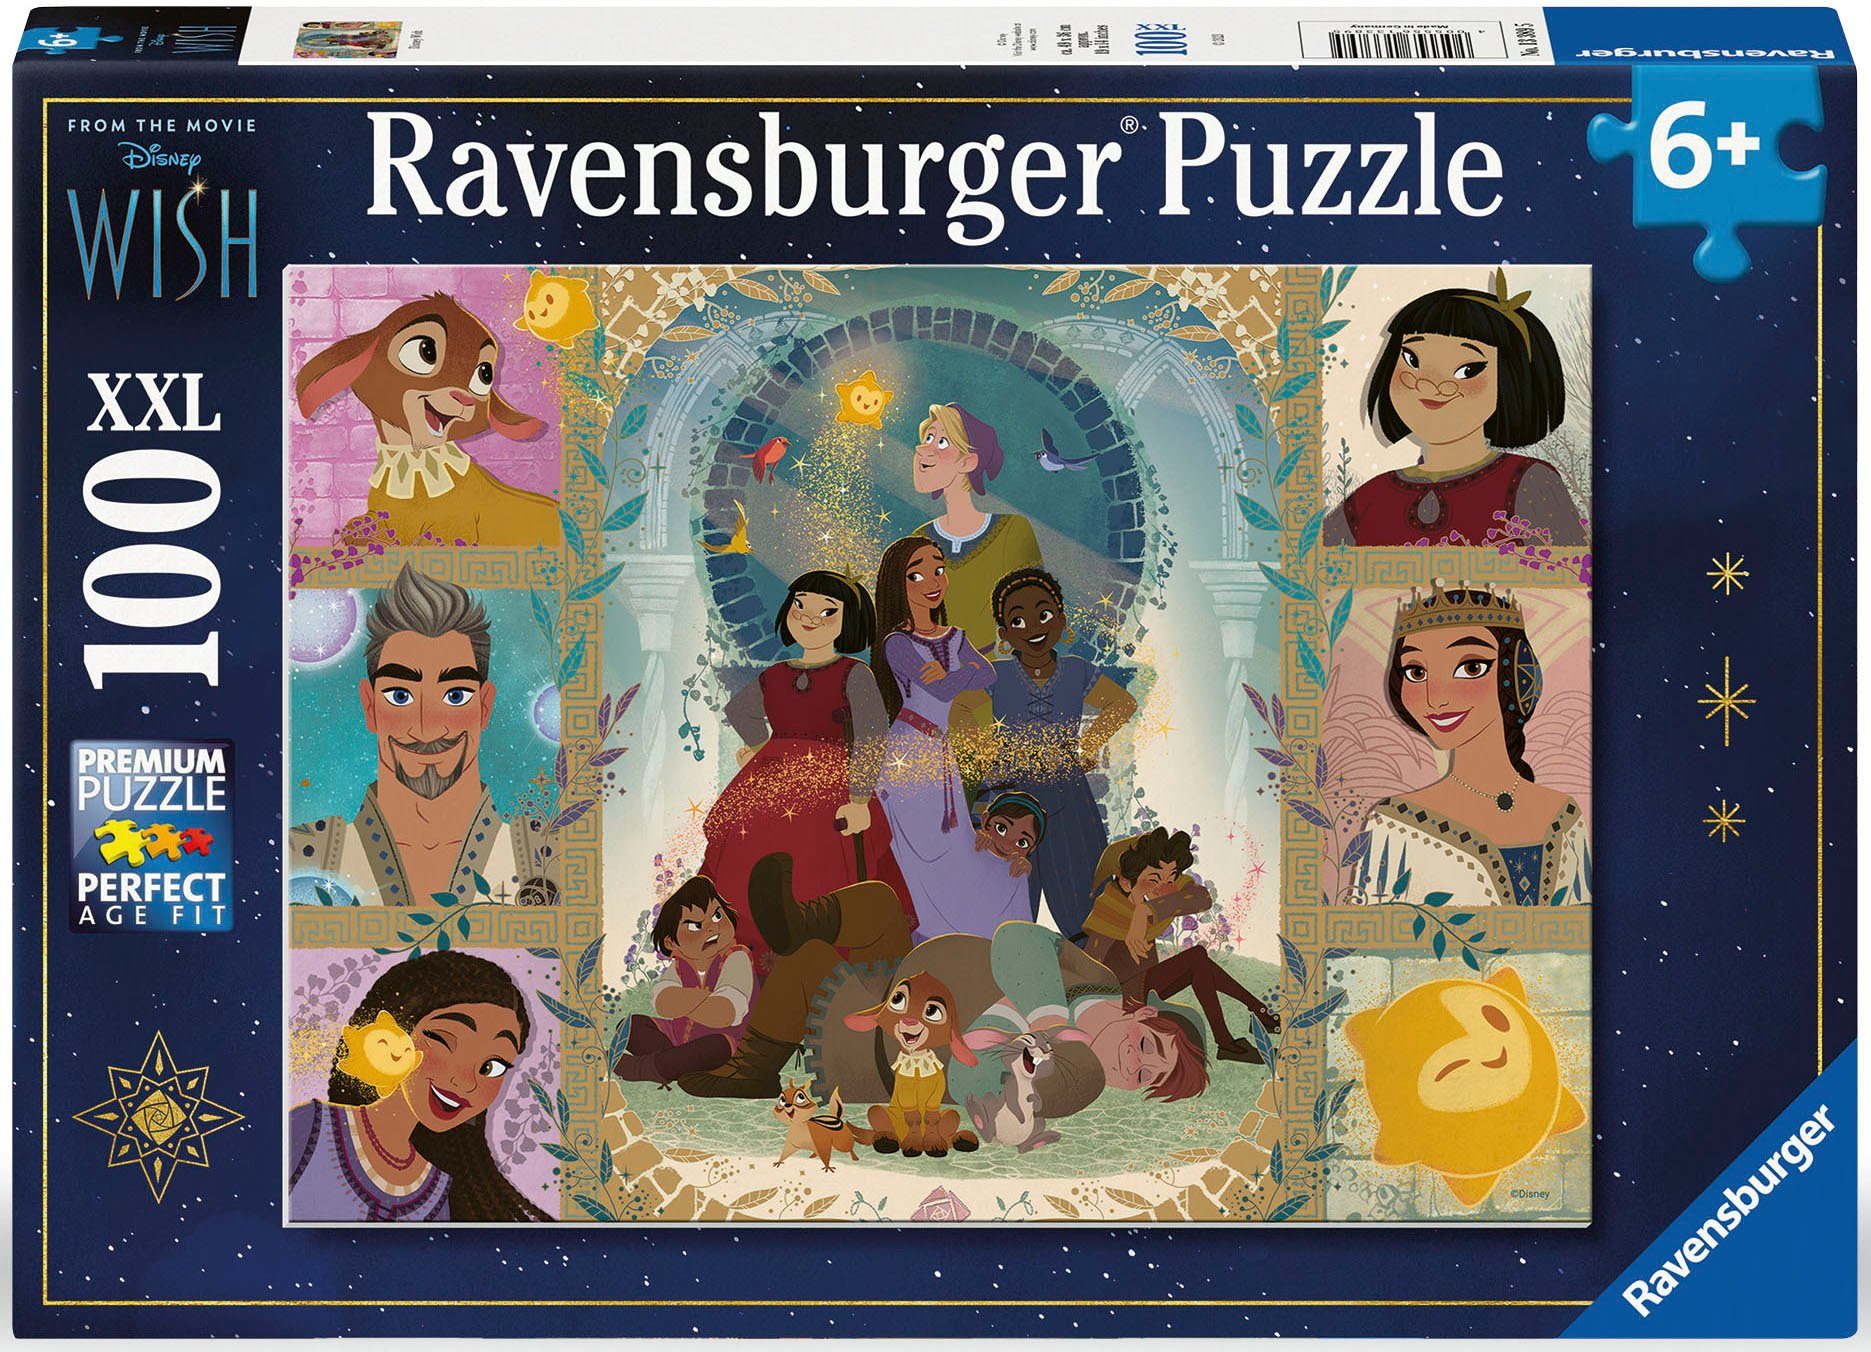 Ravensburger Puzzle Disney Wish, 100 Puzzleteile, Made in Germany, FSC® - schützt Wald - weltweit